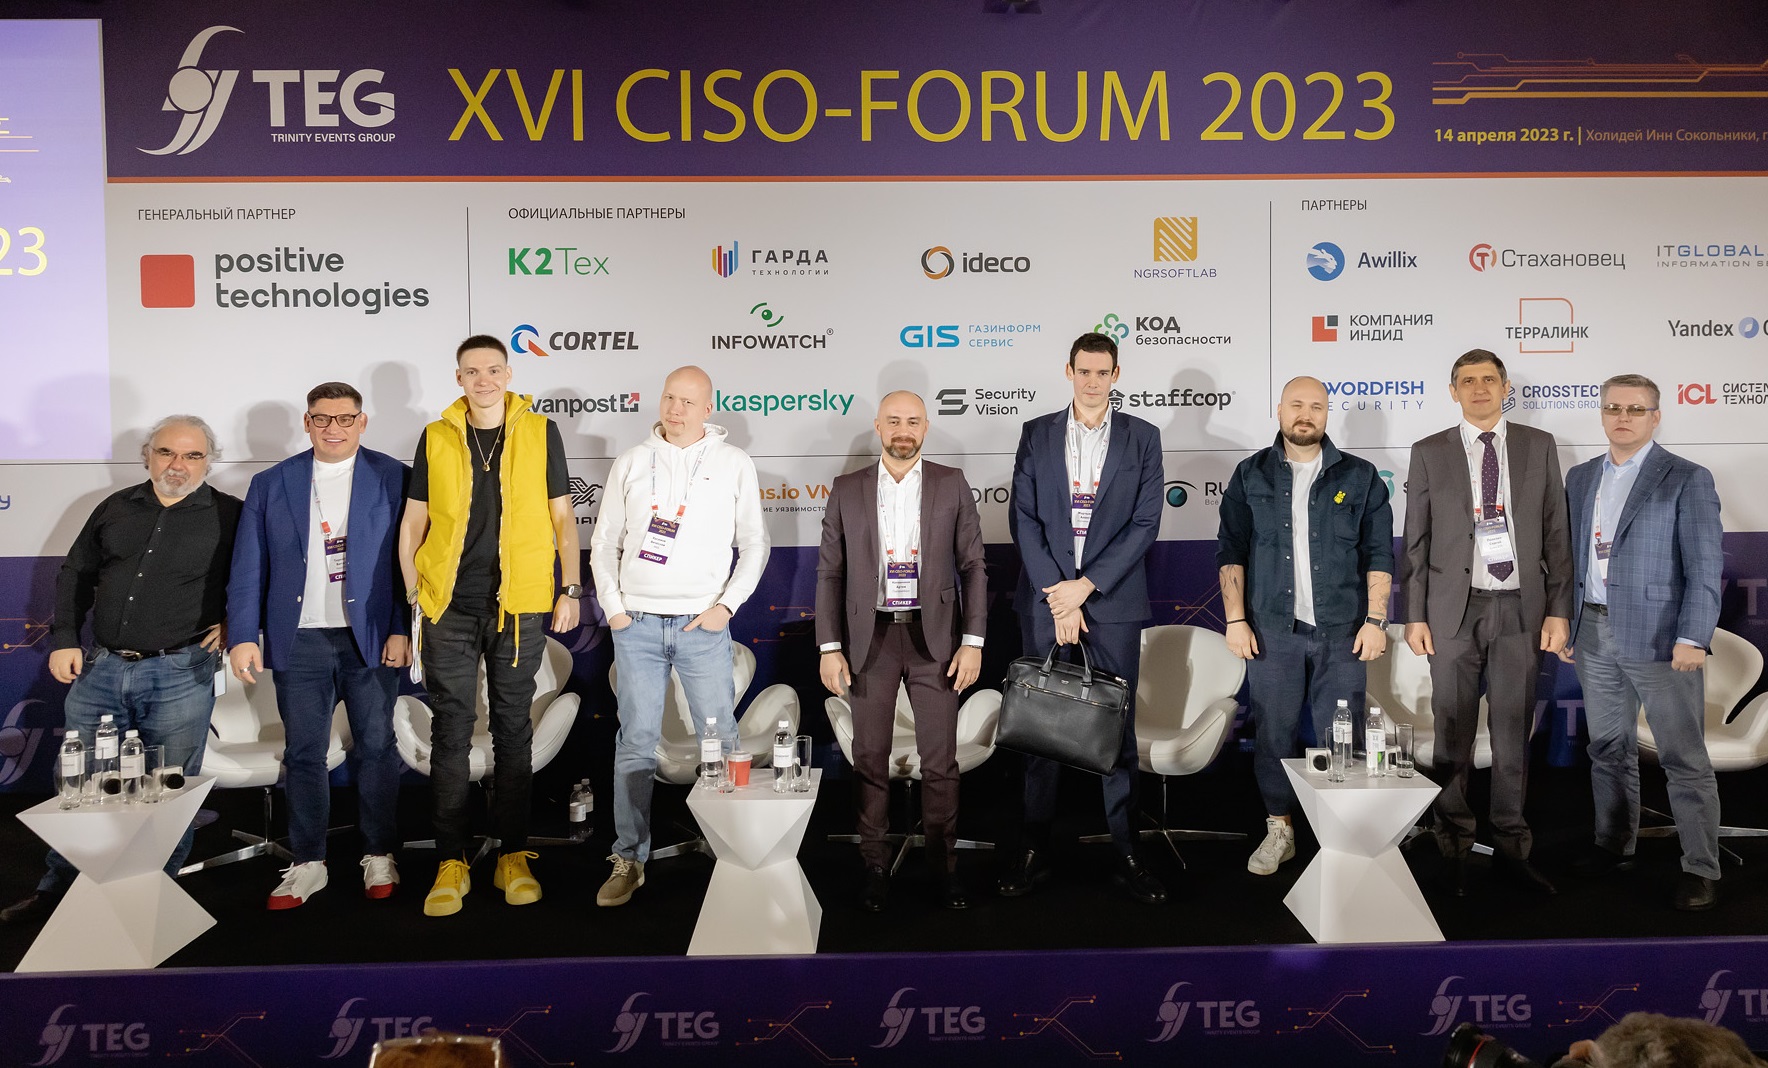 XVI Межотраслевой форум директоров по информационной безопасности CISO-FORUM 2023